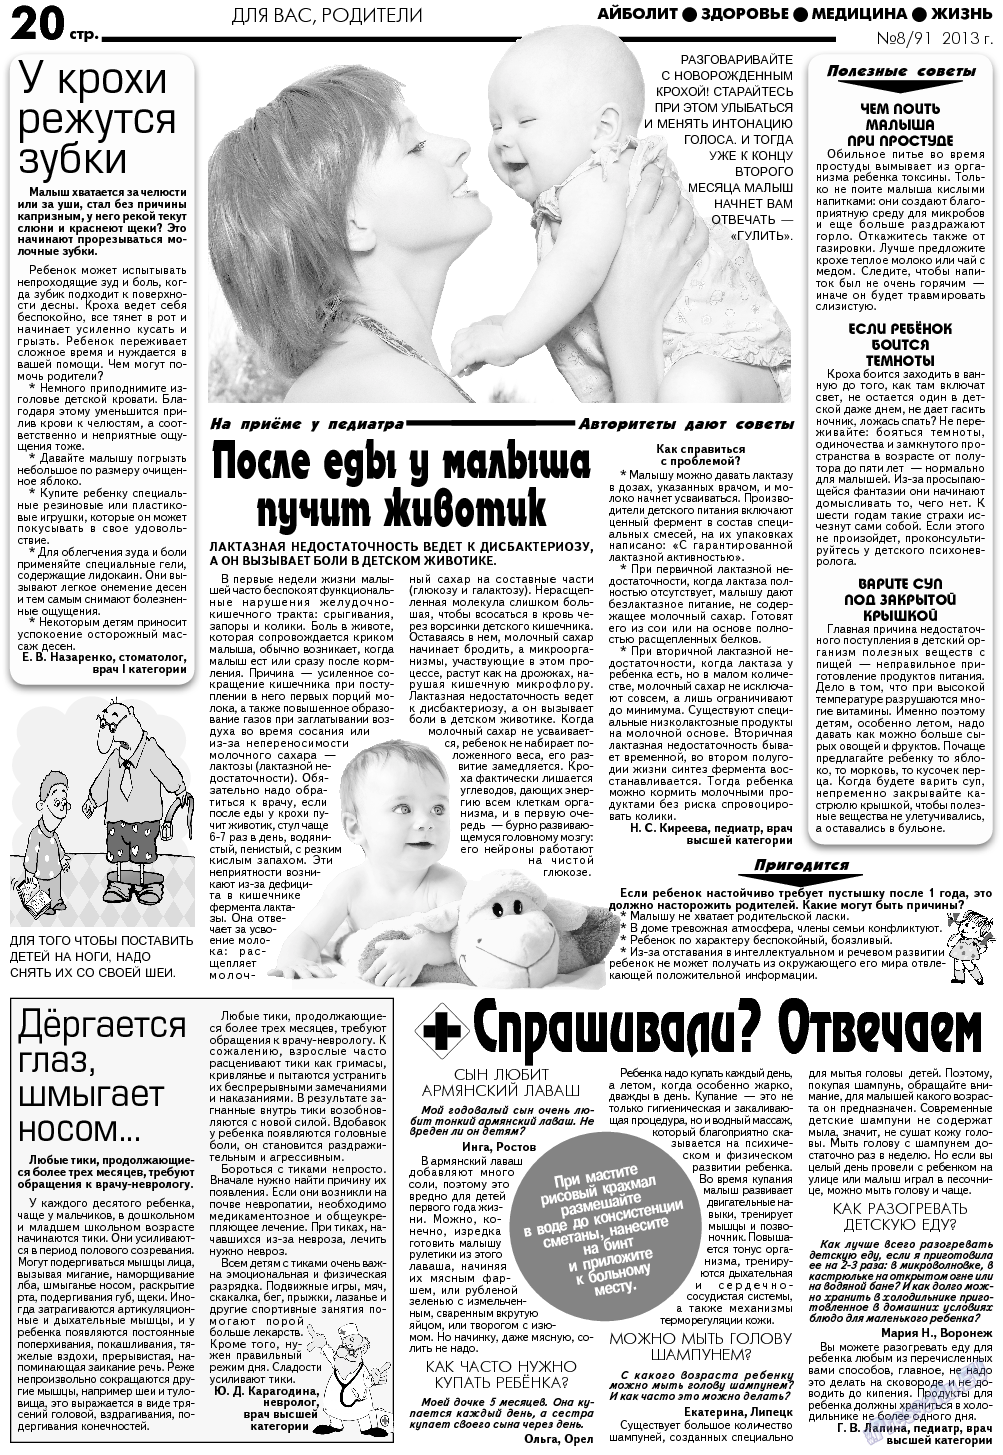 АйБолит, газета. 2013 №8 стр.20